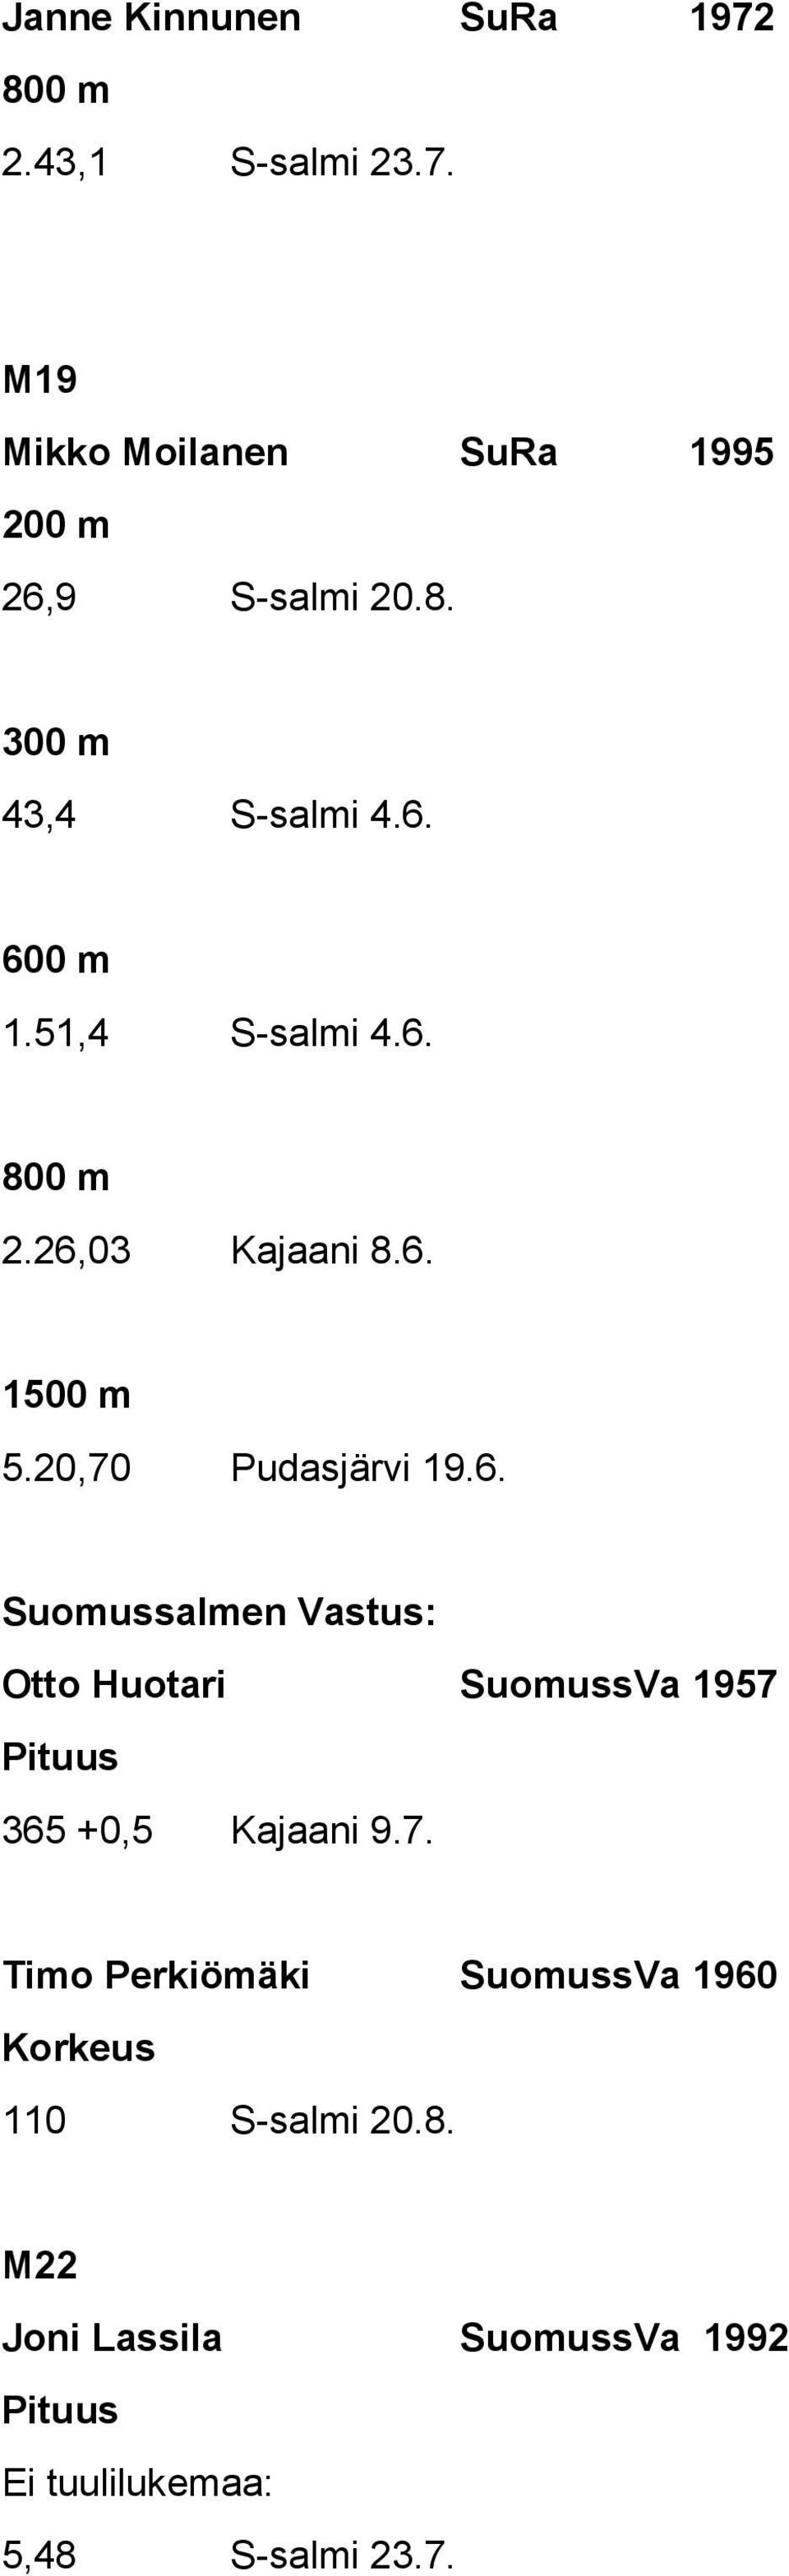 7. Timo Perkiömäki SuomussVa 1960 Korkeus 110 S-salmi 20.8.